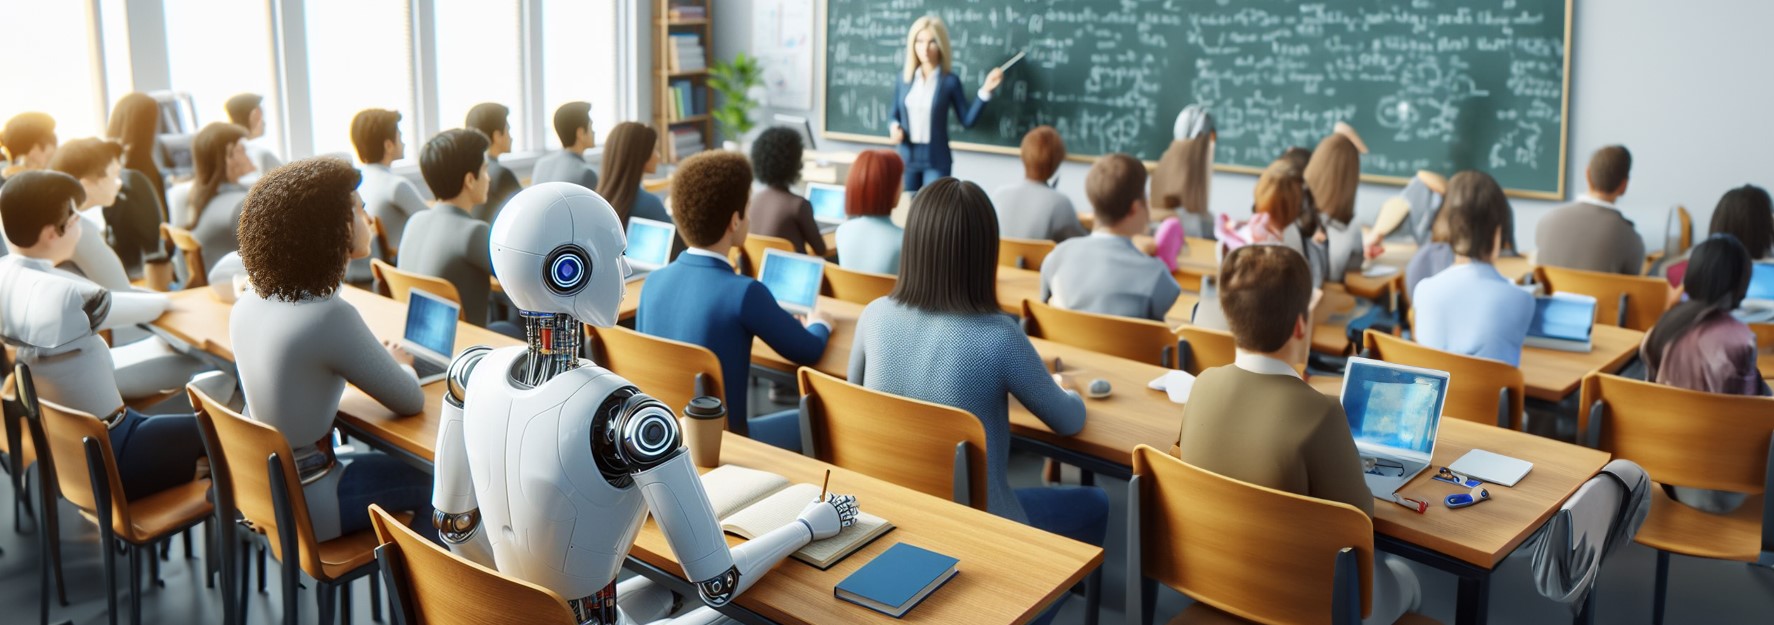 Ein Roboter sitzt in einer Schulklasse